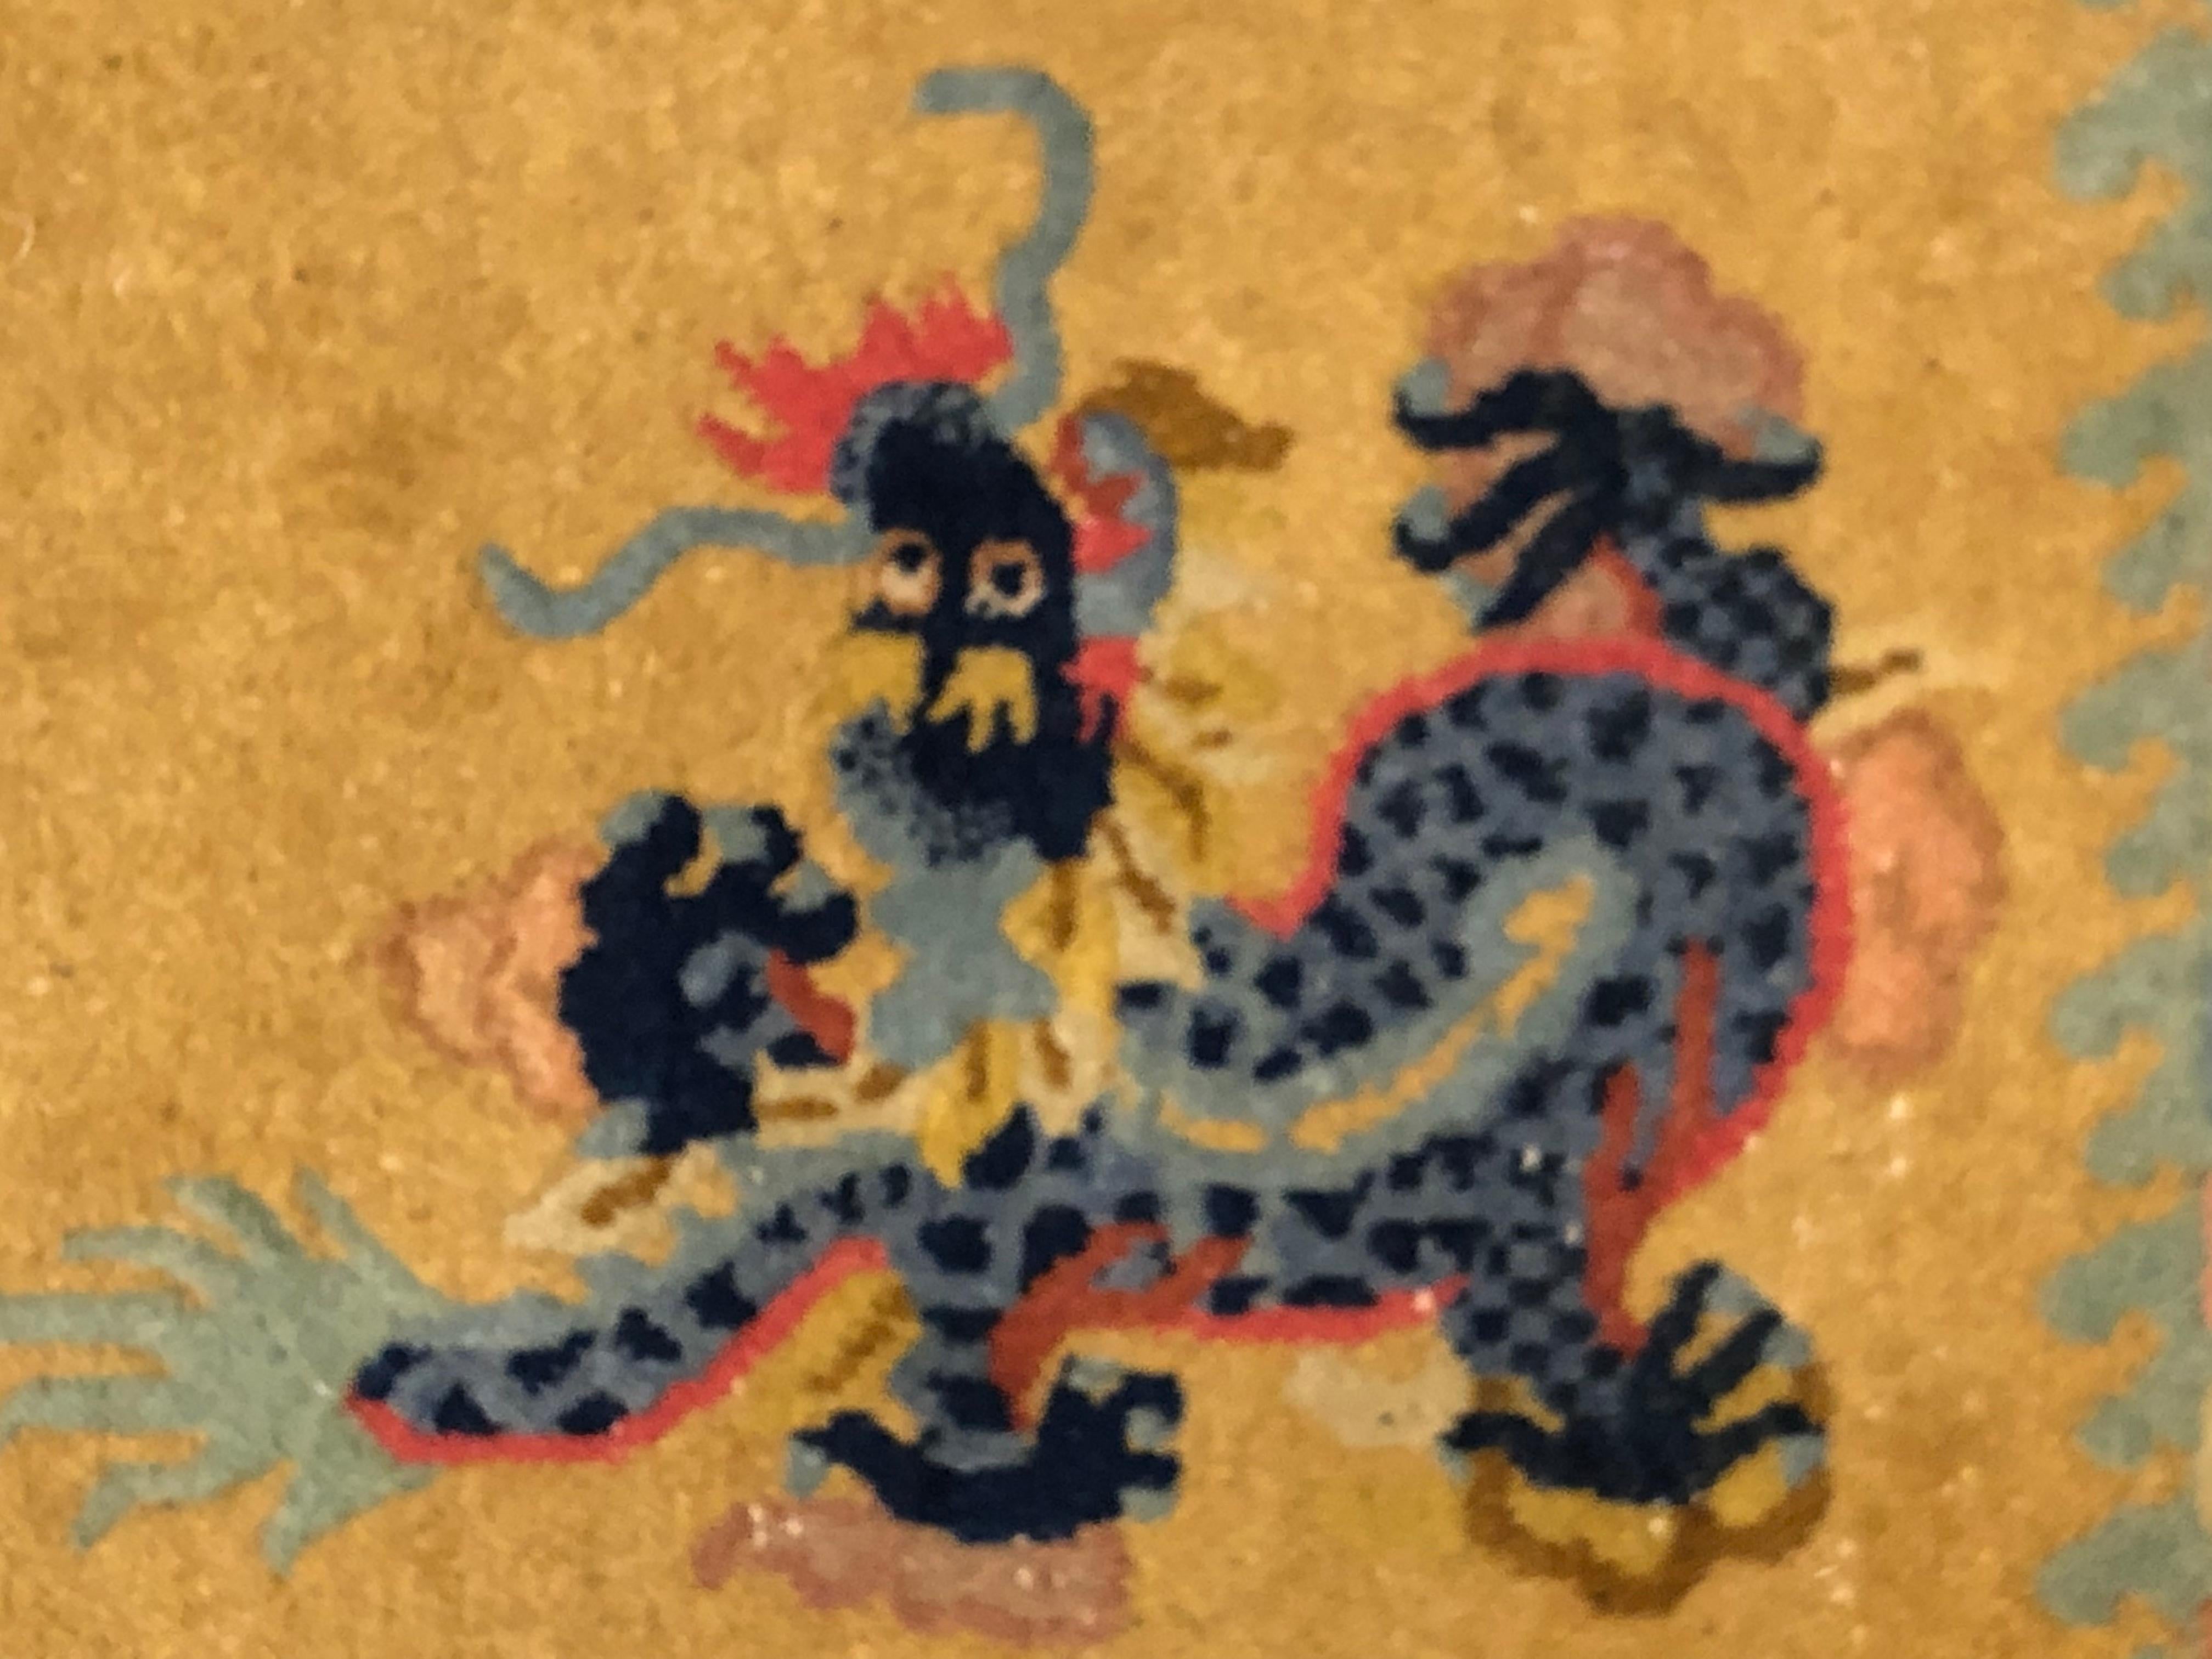 Rare tapis chinois pour la couleur de fond jaune citron. Le sujet du décor est celui de la danse des dragons, enrichi par une importante bordure où sont représentés les symboles bouddhiques des bons vœux. Le nœud infini qui est un symbole du pouvoir